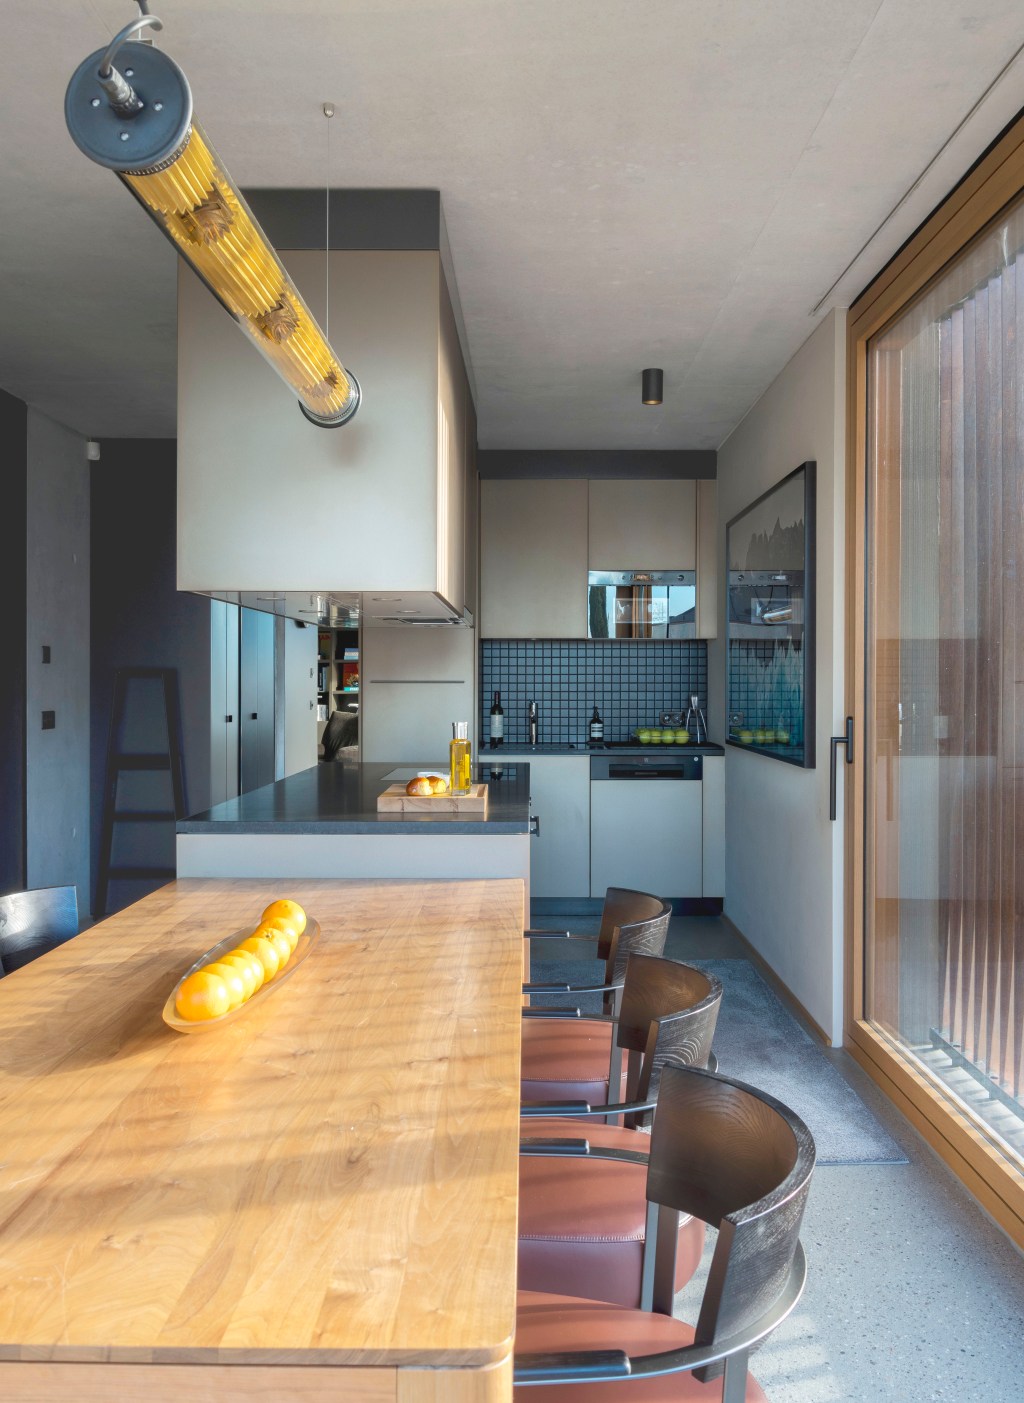 David Bastos projeta apartamento na Suíça repleto de design assinado. Na foto, cozinha com bancada, mesa e armários suspensos.